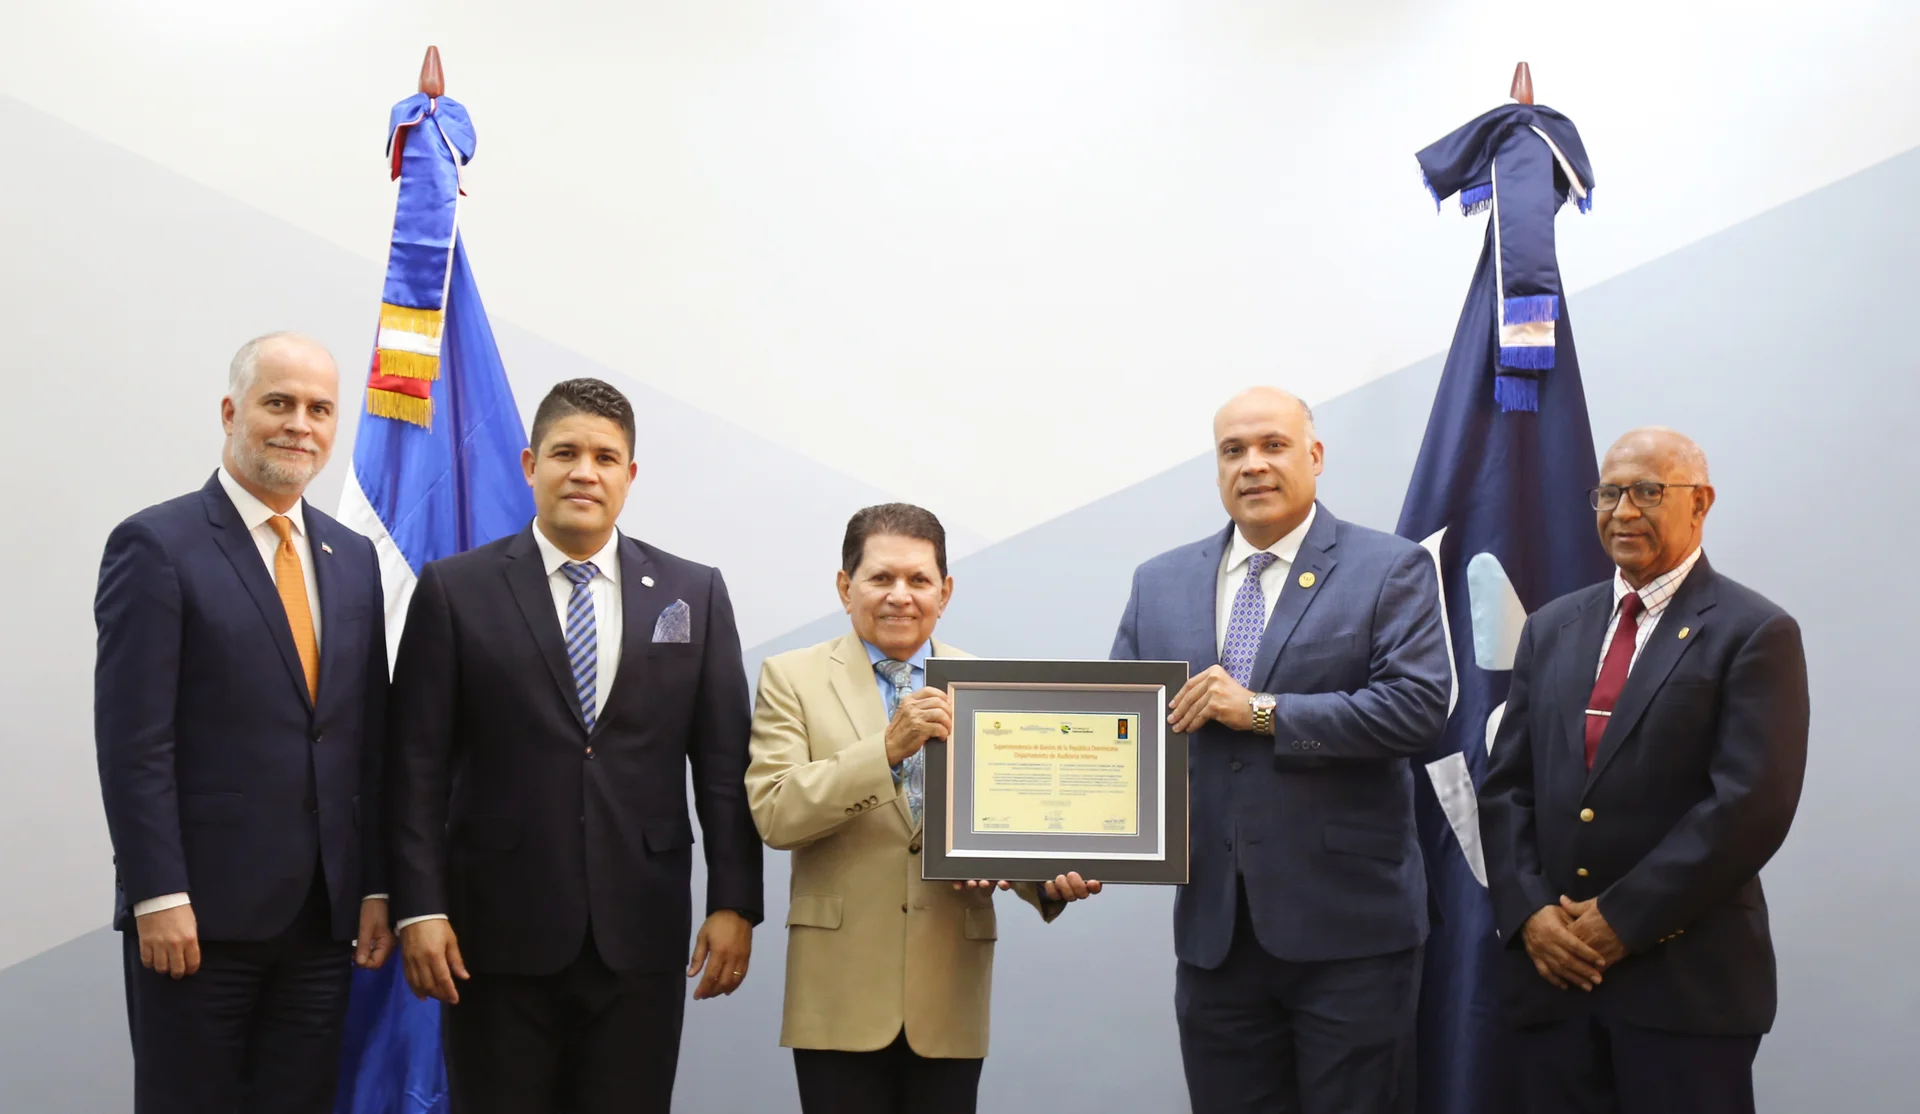 Superintendente de Bancos junto a cuatro integrantes del Instituto de Auditores Internos de la República Dominicana